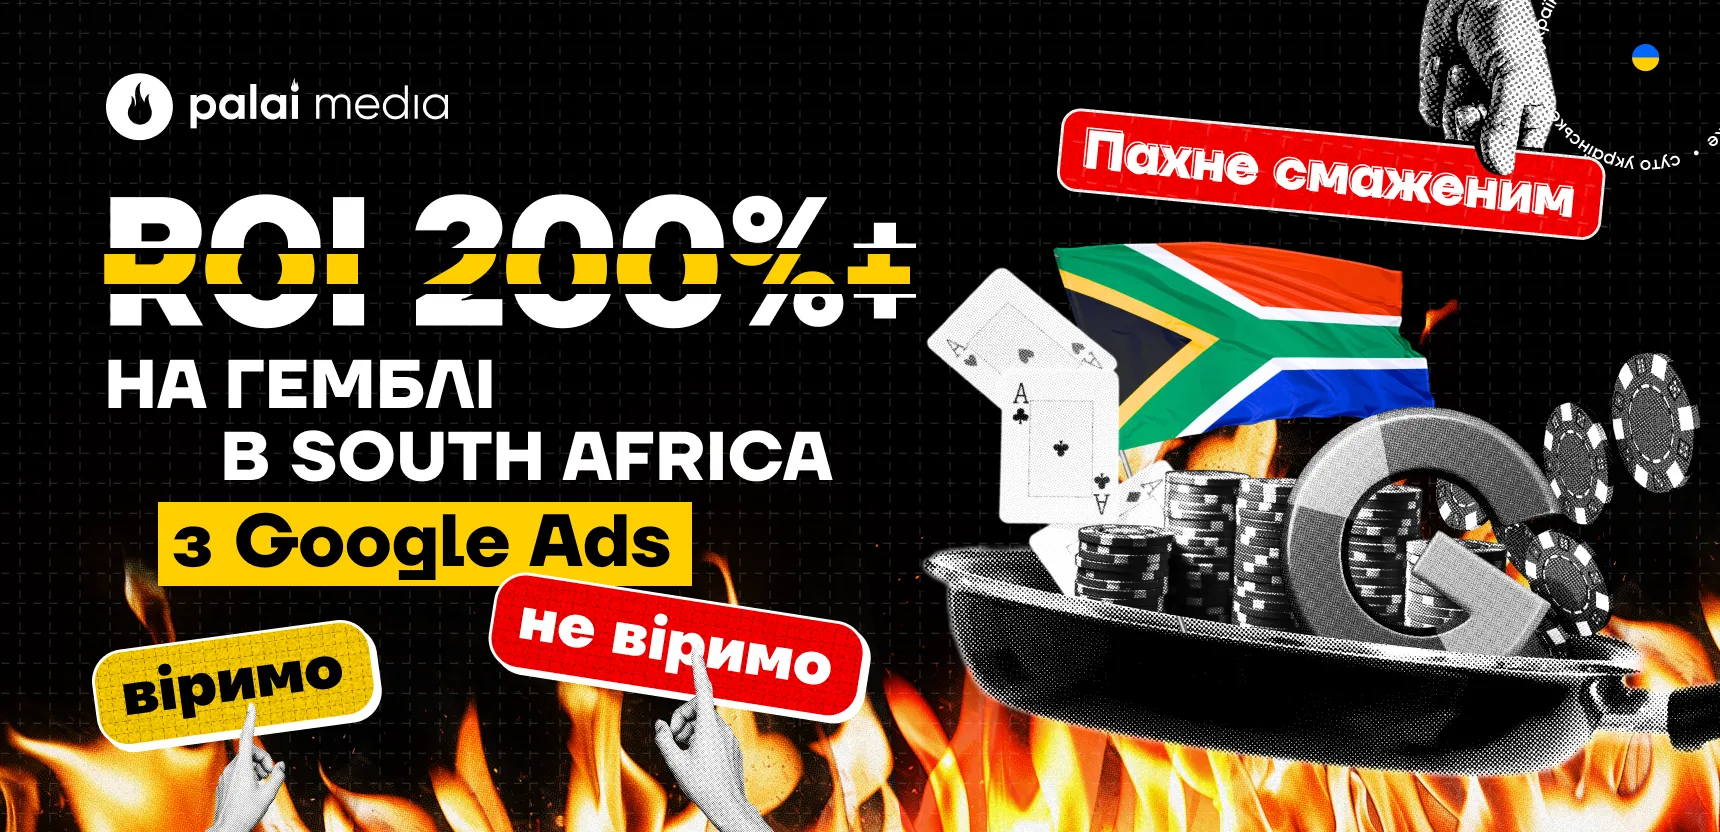 ROI 200%+ на гемблінг-офері в Південній Африці